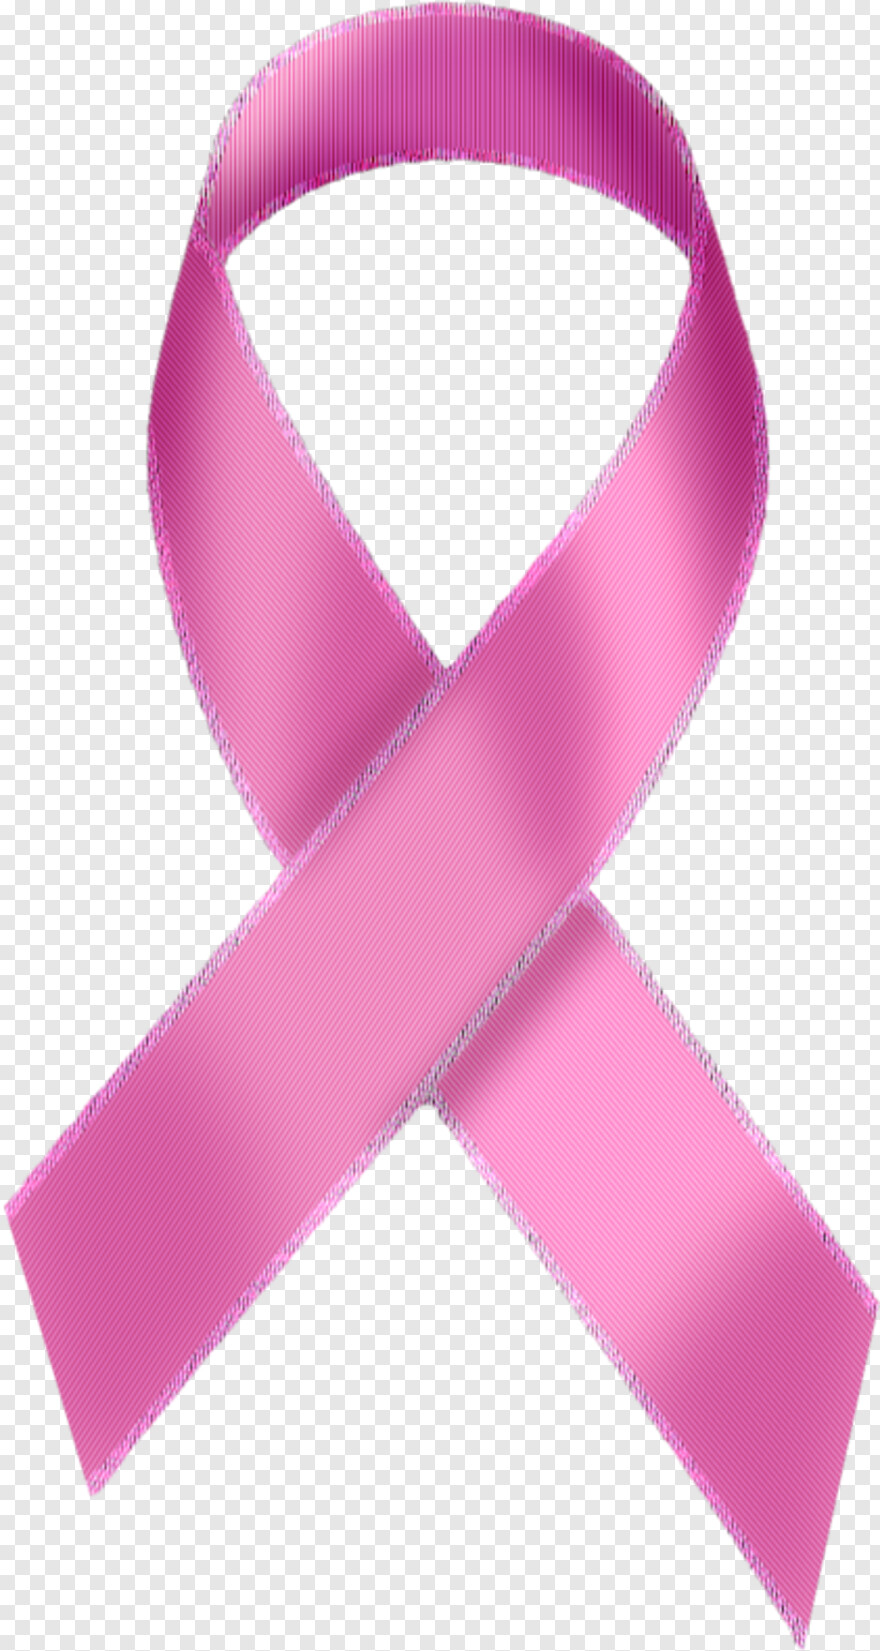 breast-cancer-logo # 438644